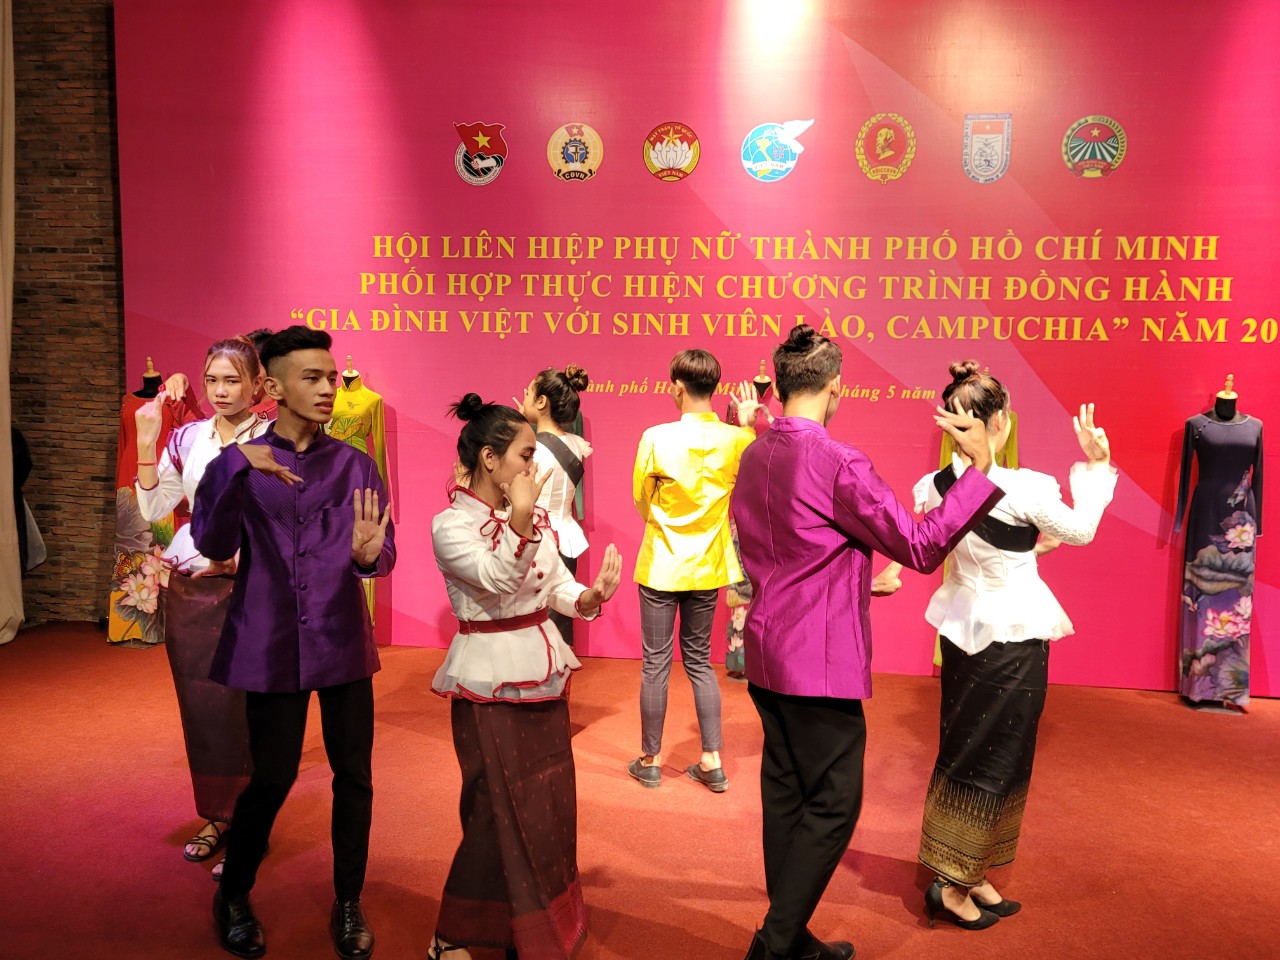 Các bạn sinh viên Lào - Campuchia cũng nhân hoạt động này đã giới thiệu những nét văn hóa đặc sắc của dân tộc mình thông qua điệu múa truyền thống